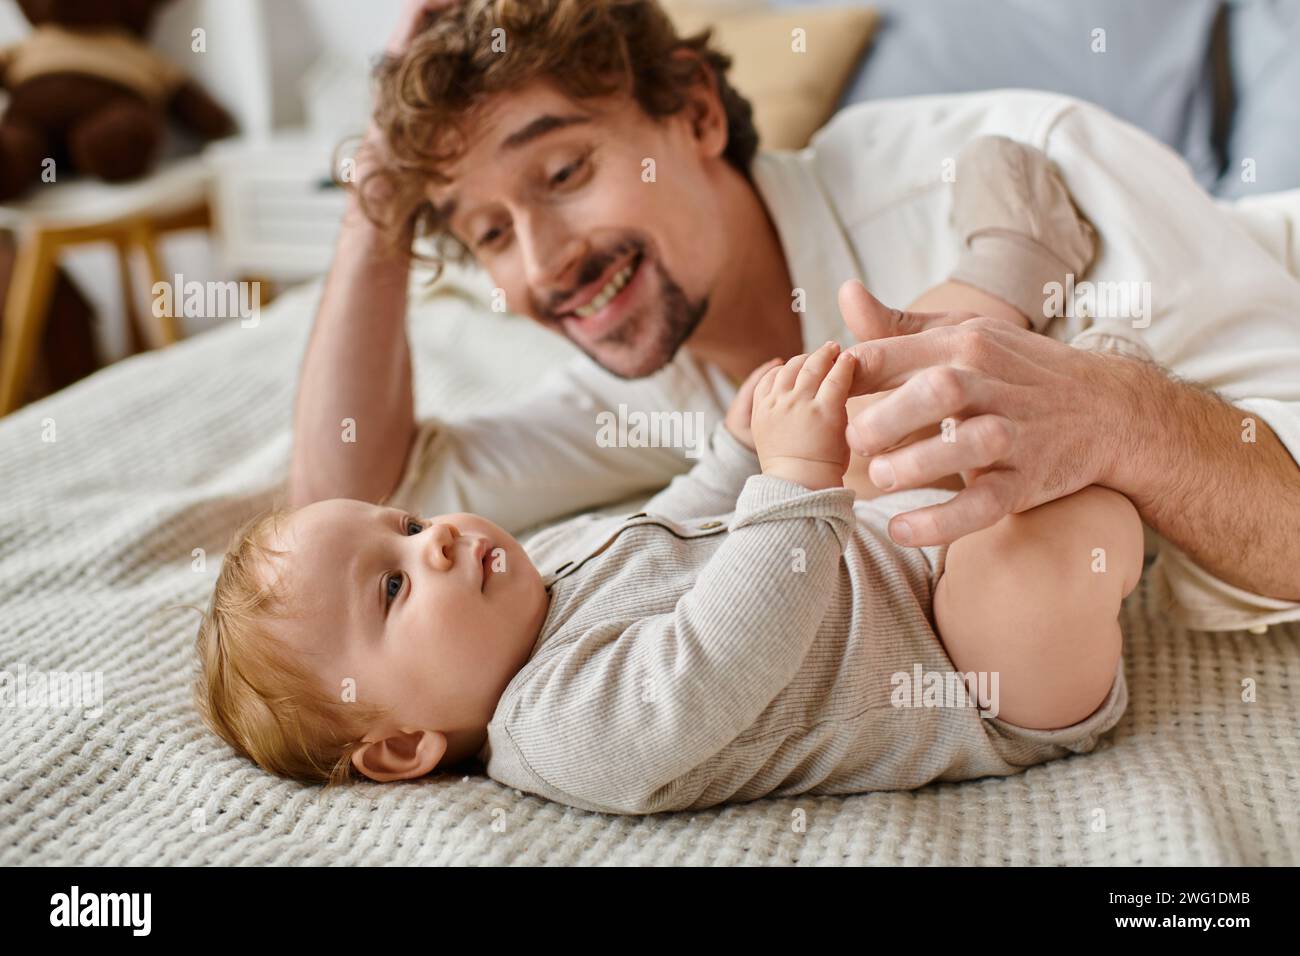 Niedlicher Junge, der auf dem Bett liegt und die Hand seines bärtigen, glücklichen Vaters hält, kostbare Momente Stockfoto